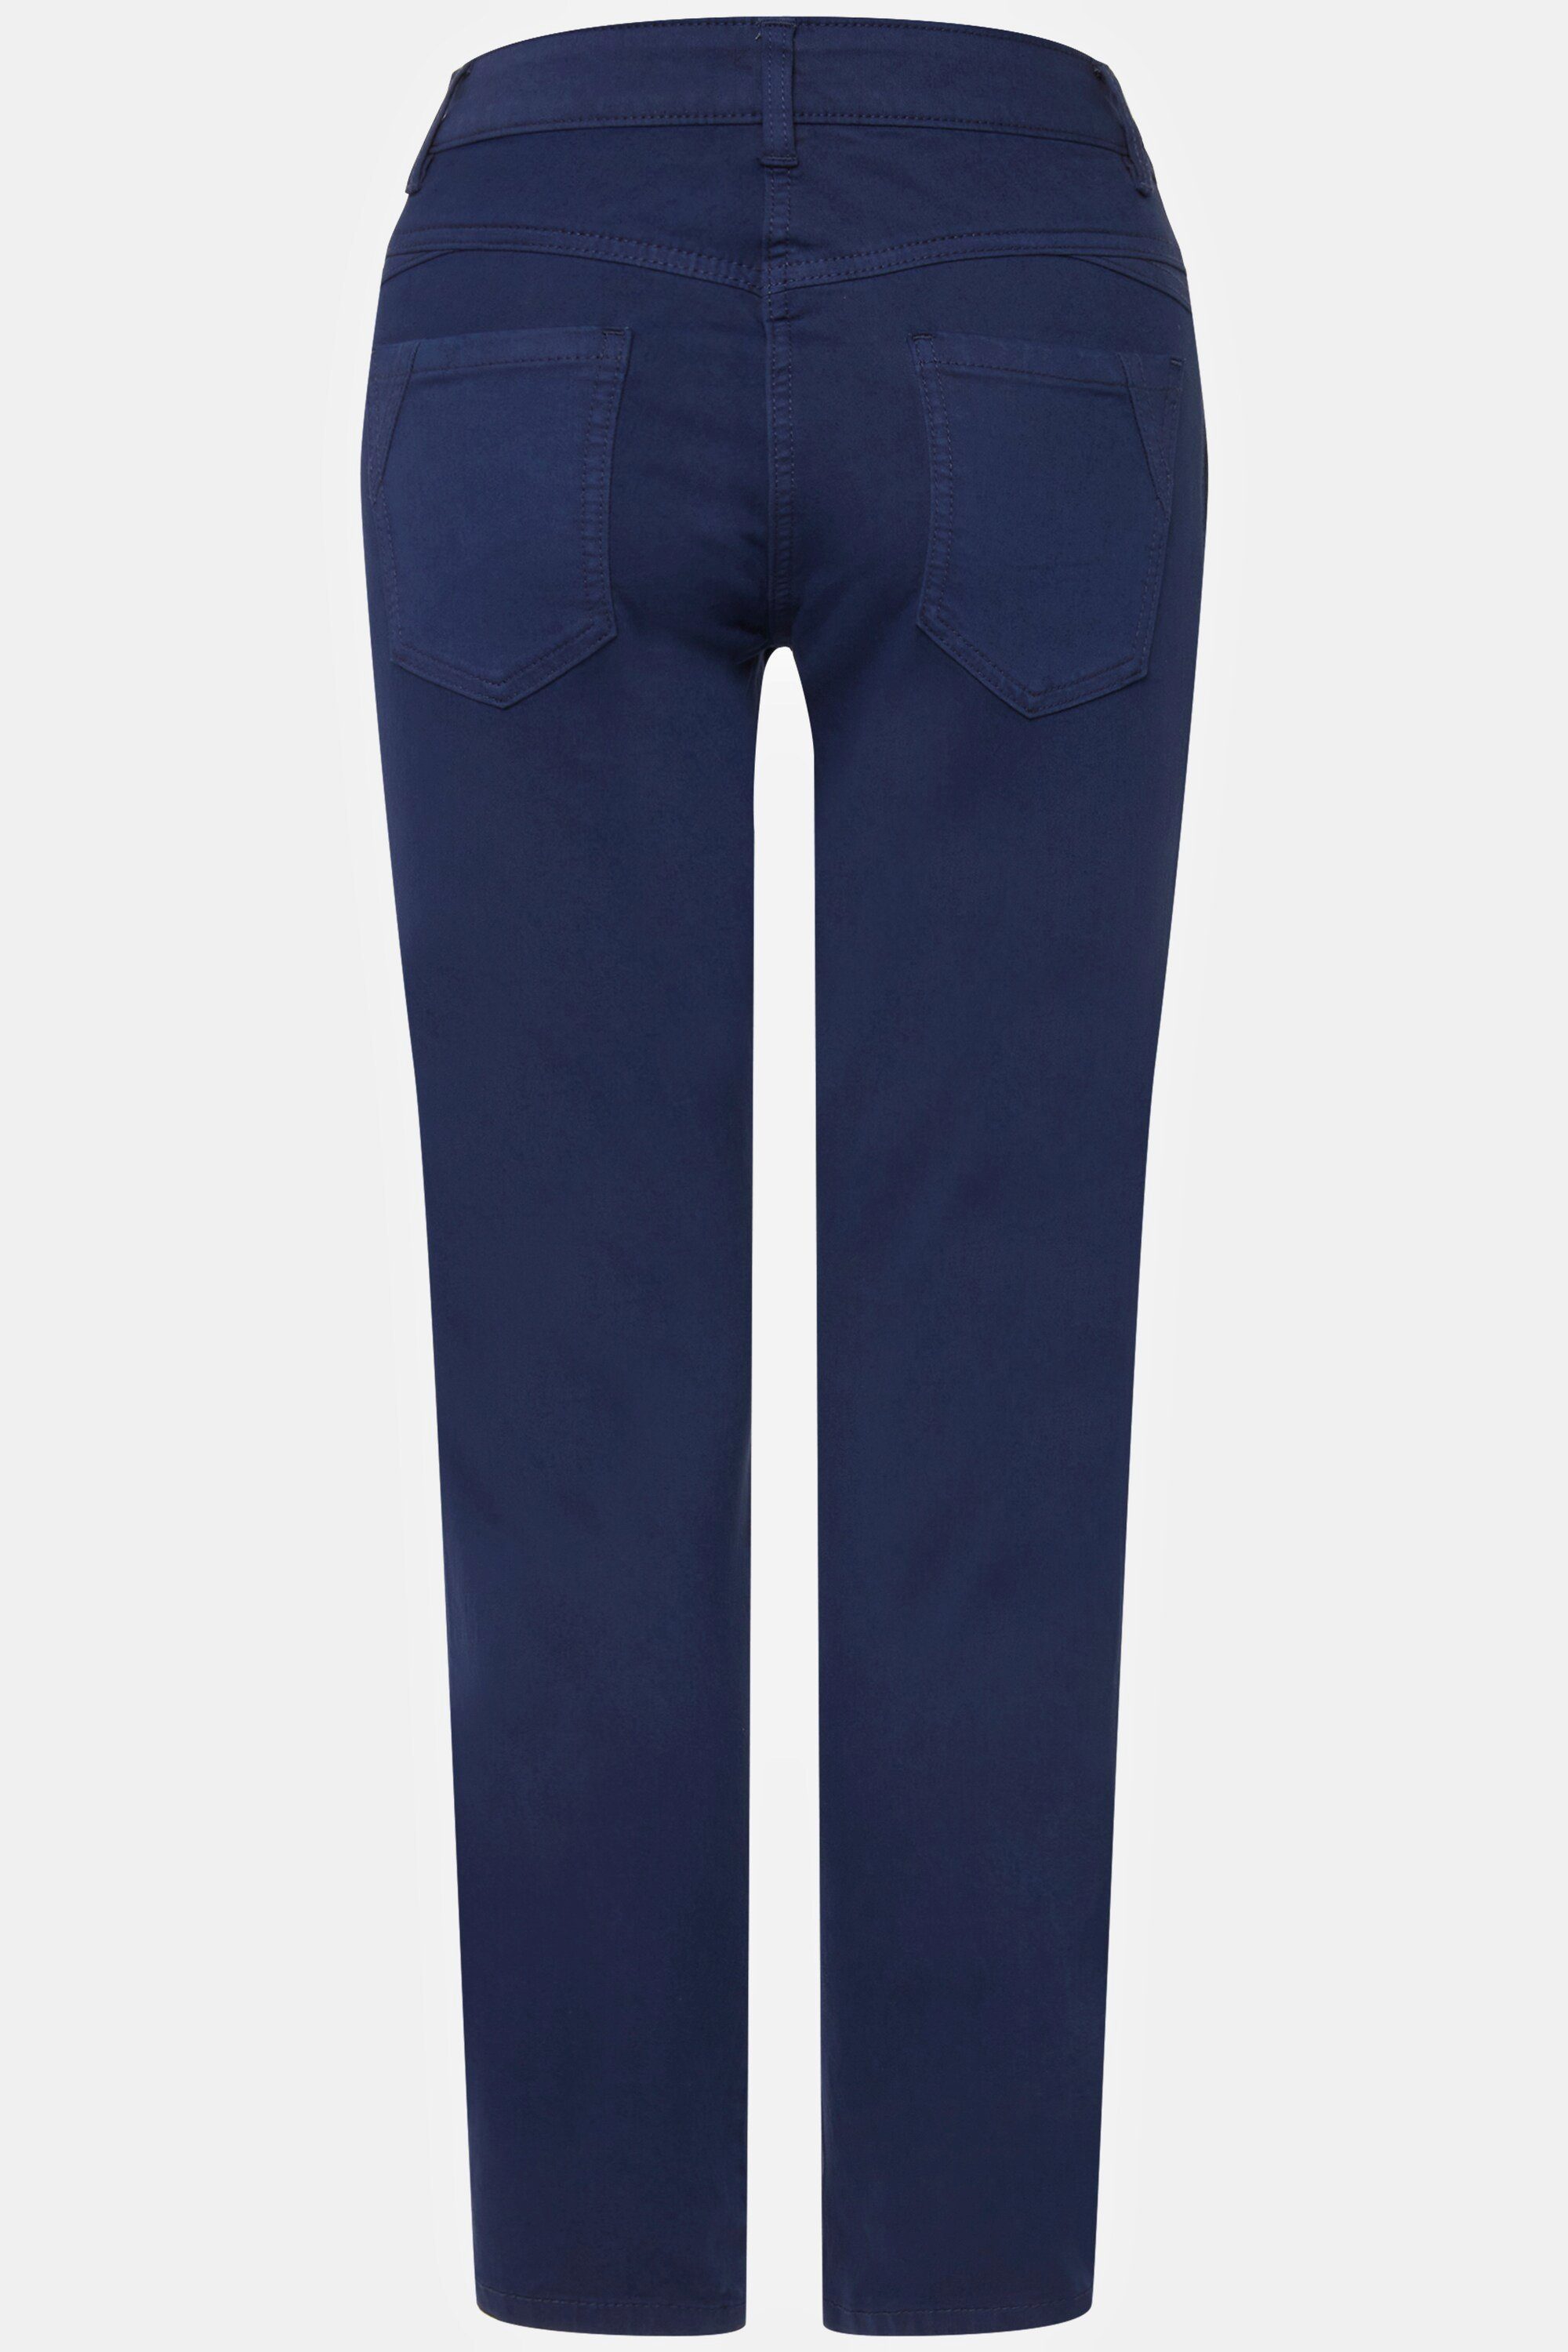 Tina Laurasøn Jeans 5-Pocket-Jeans seitliche jeansblau gerade Zierfalten Passform